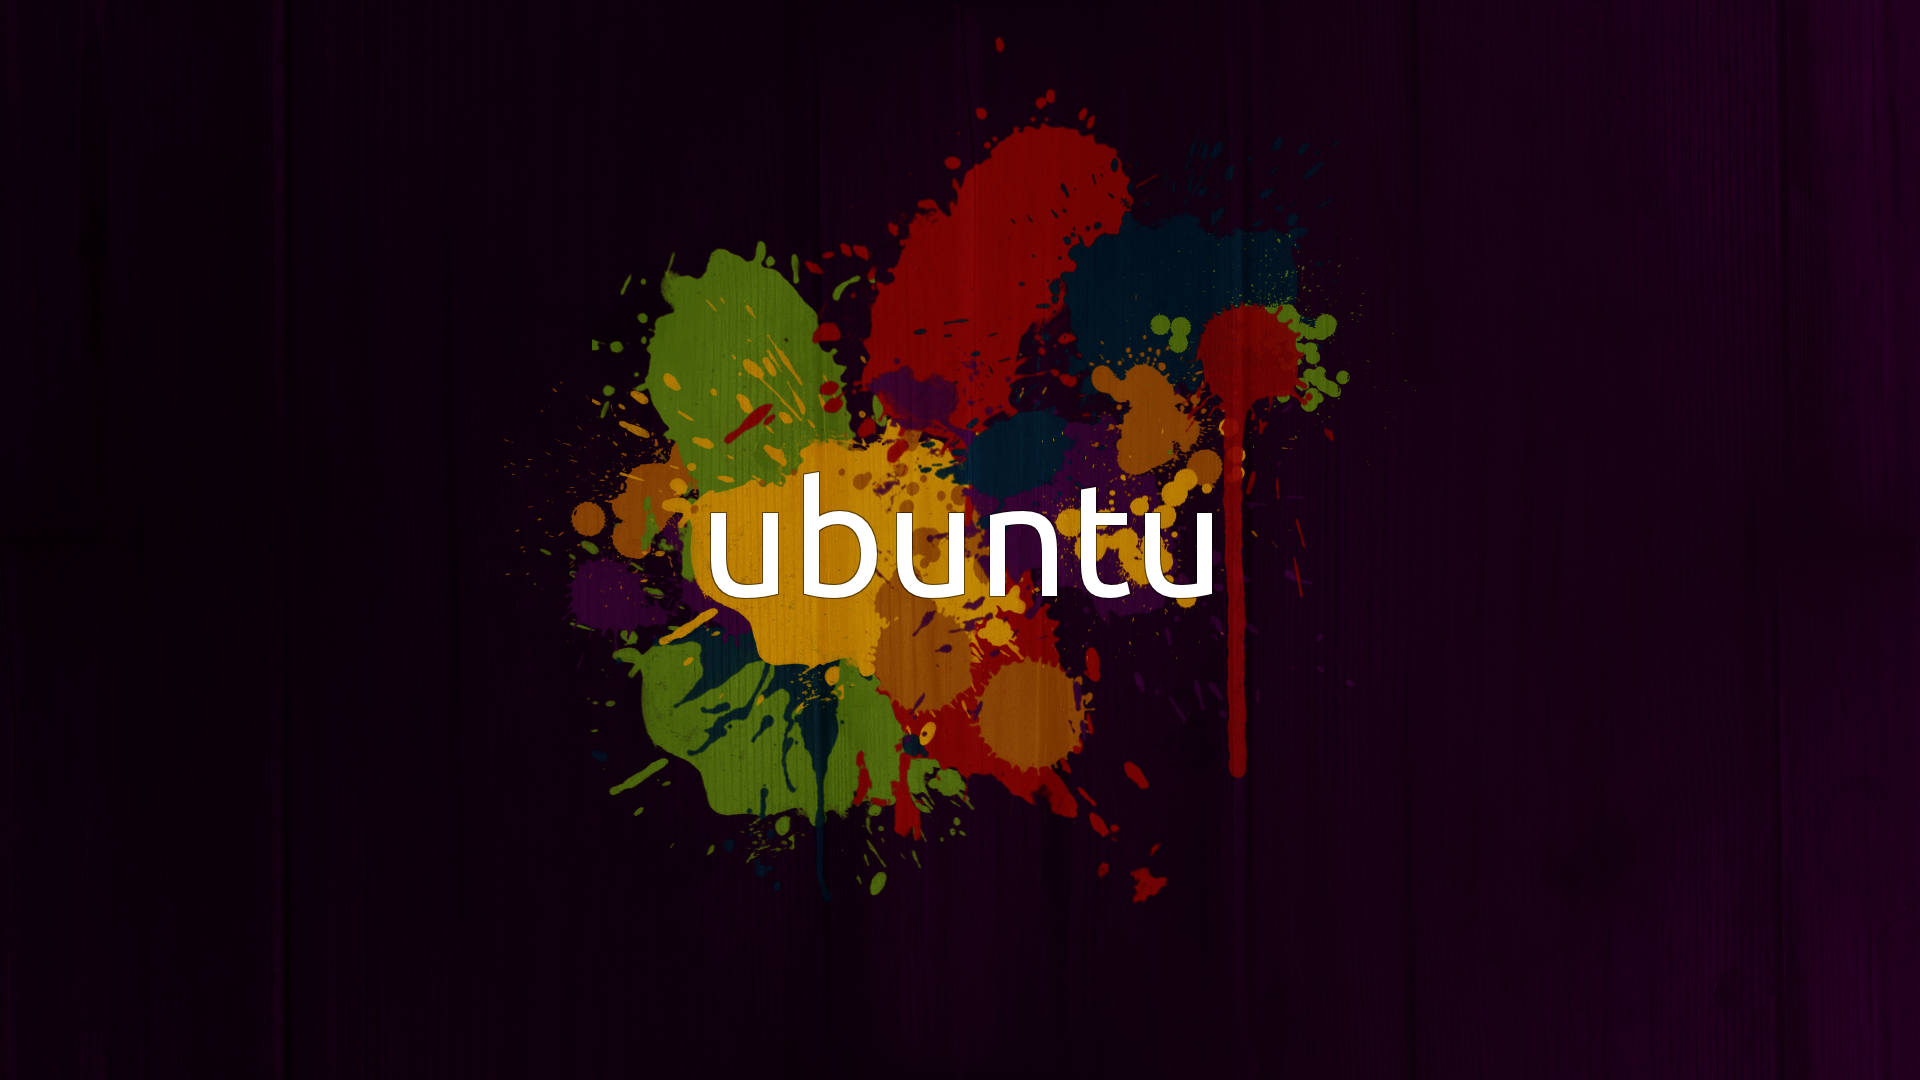  Ubuntu  Backgrounds  PixelsTalk Net